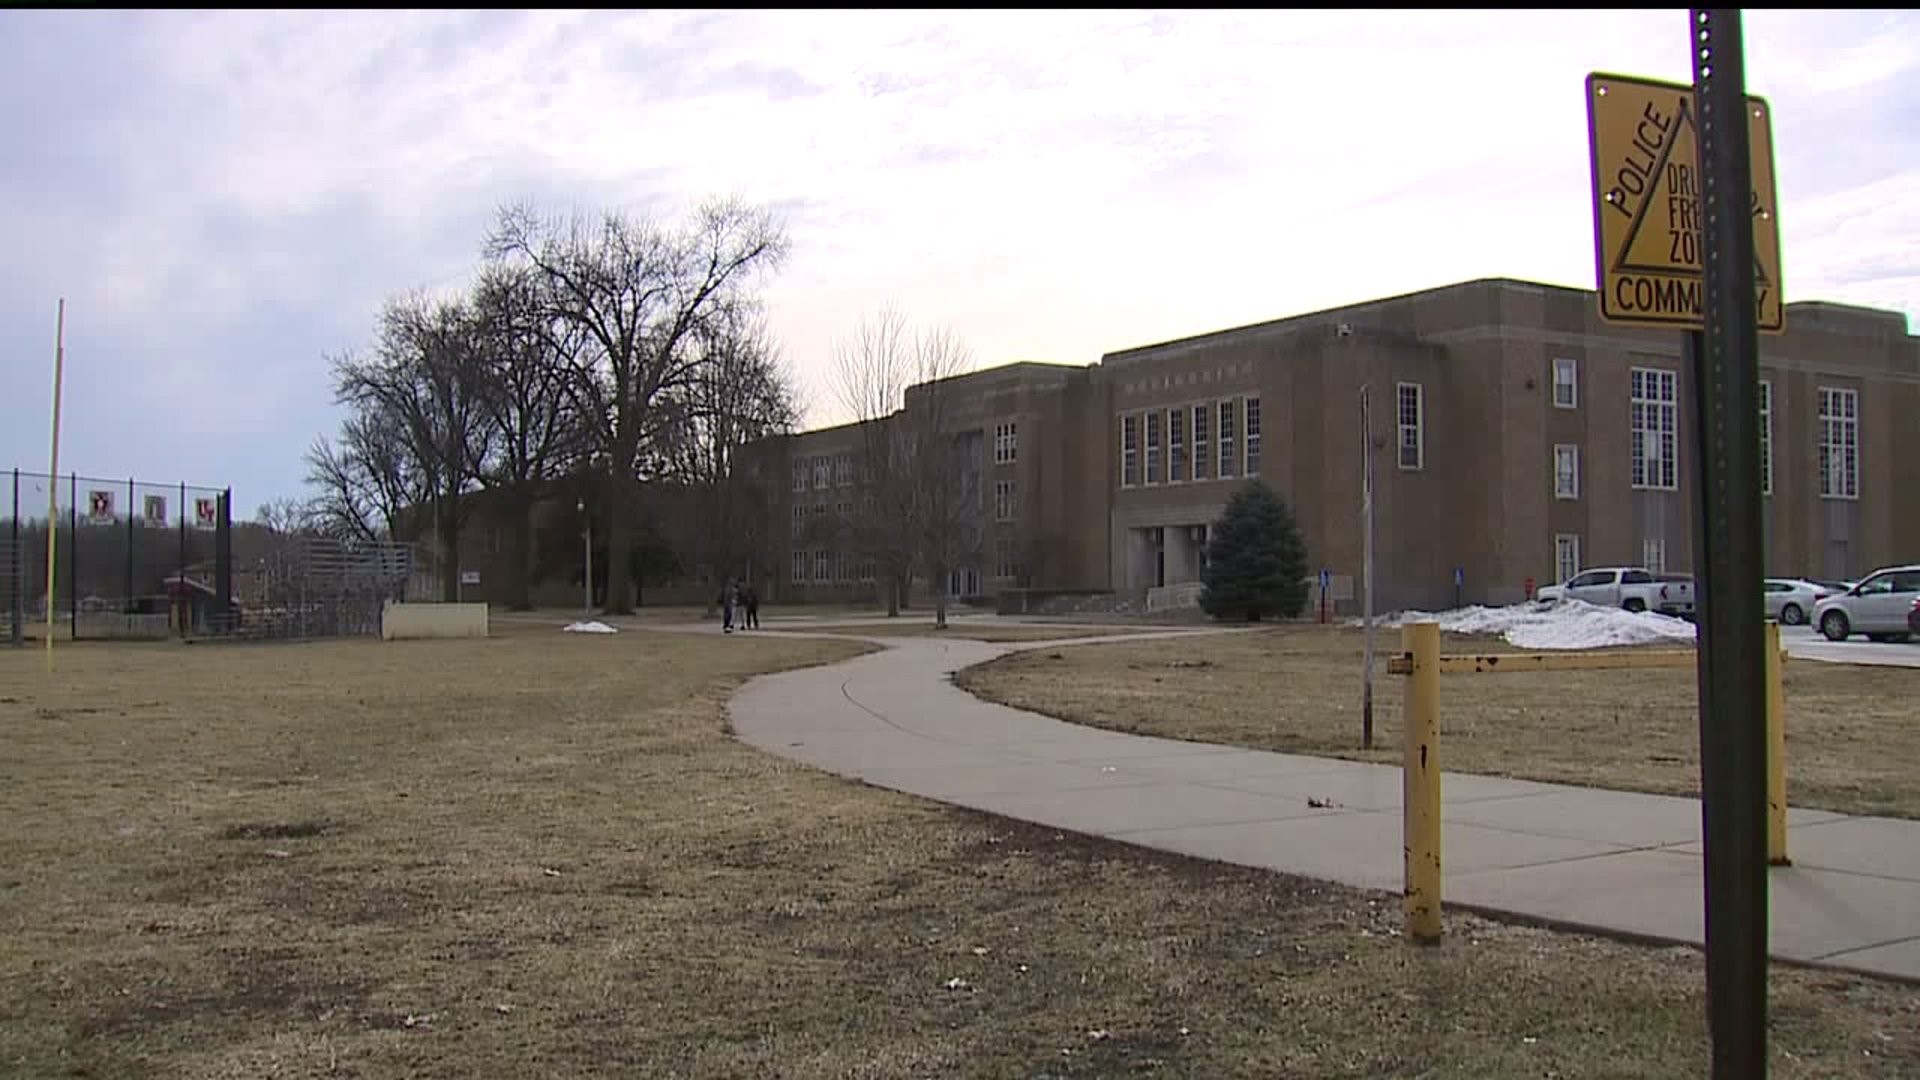 Local schools say Lockdowns were precautionary